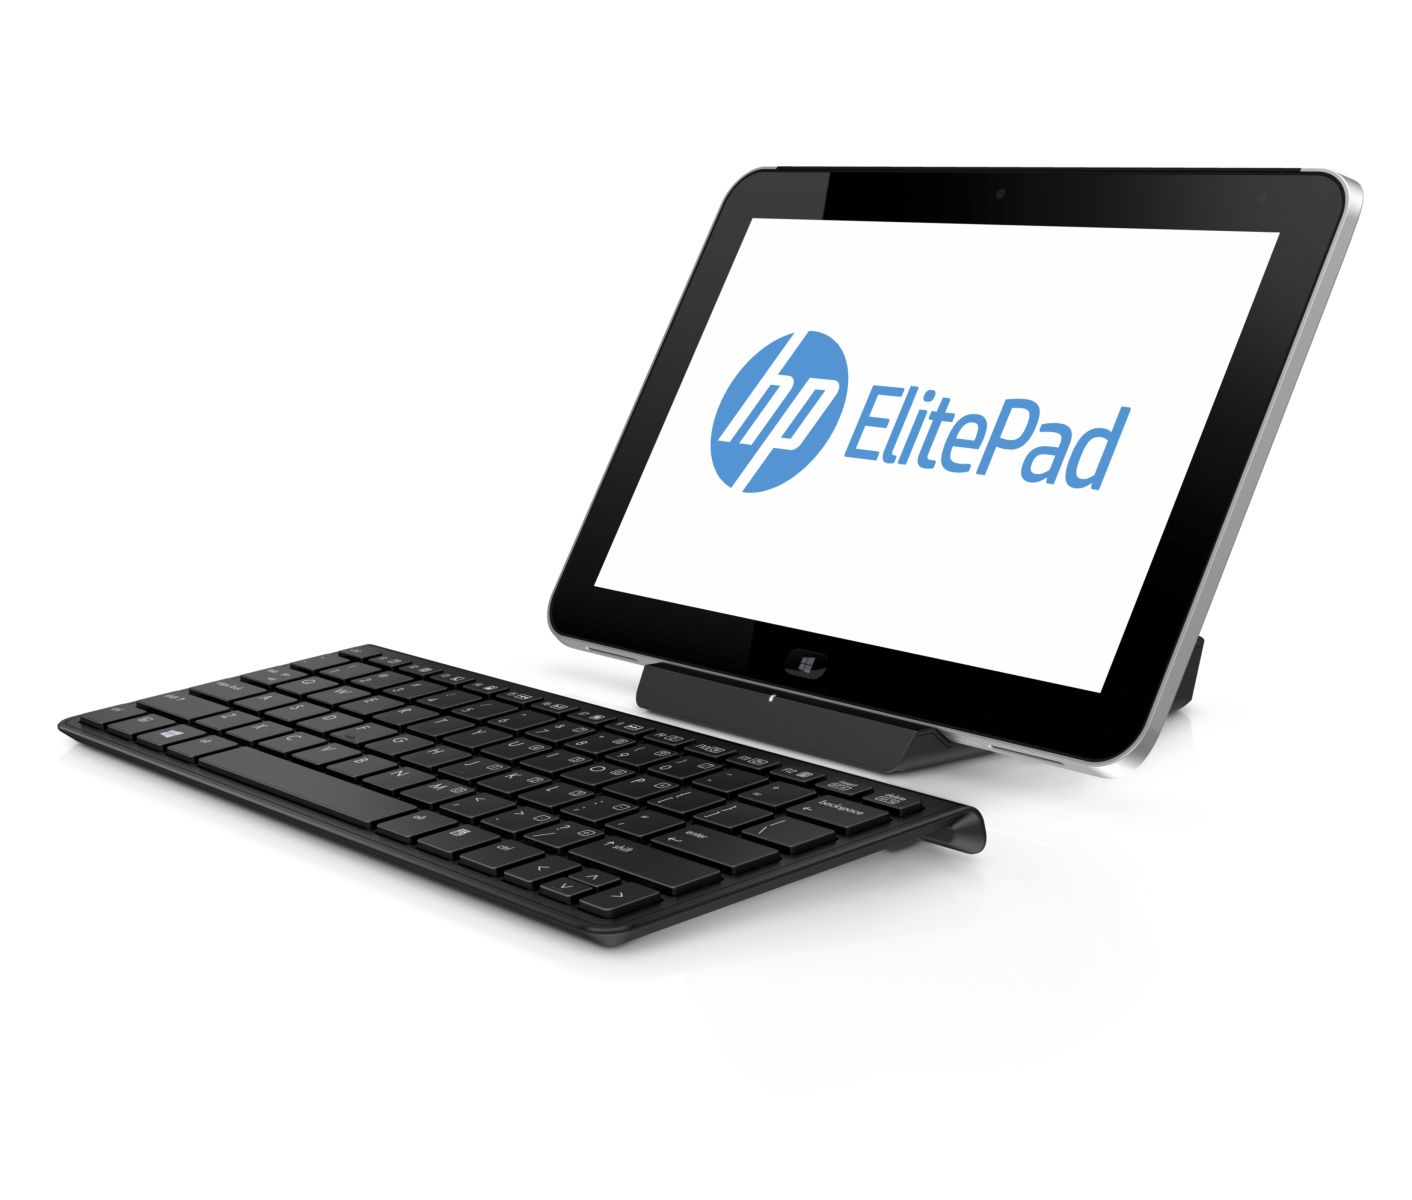 إتش بي تعلن عن الحاسب اللوحي للأعمال ElitePad 900 بنظام ويندوز 8